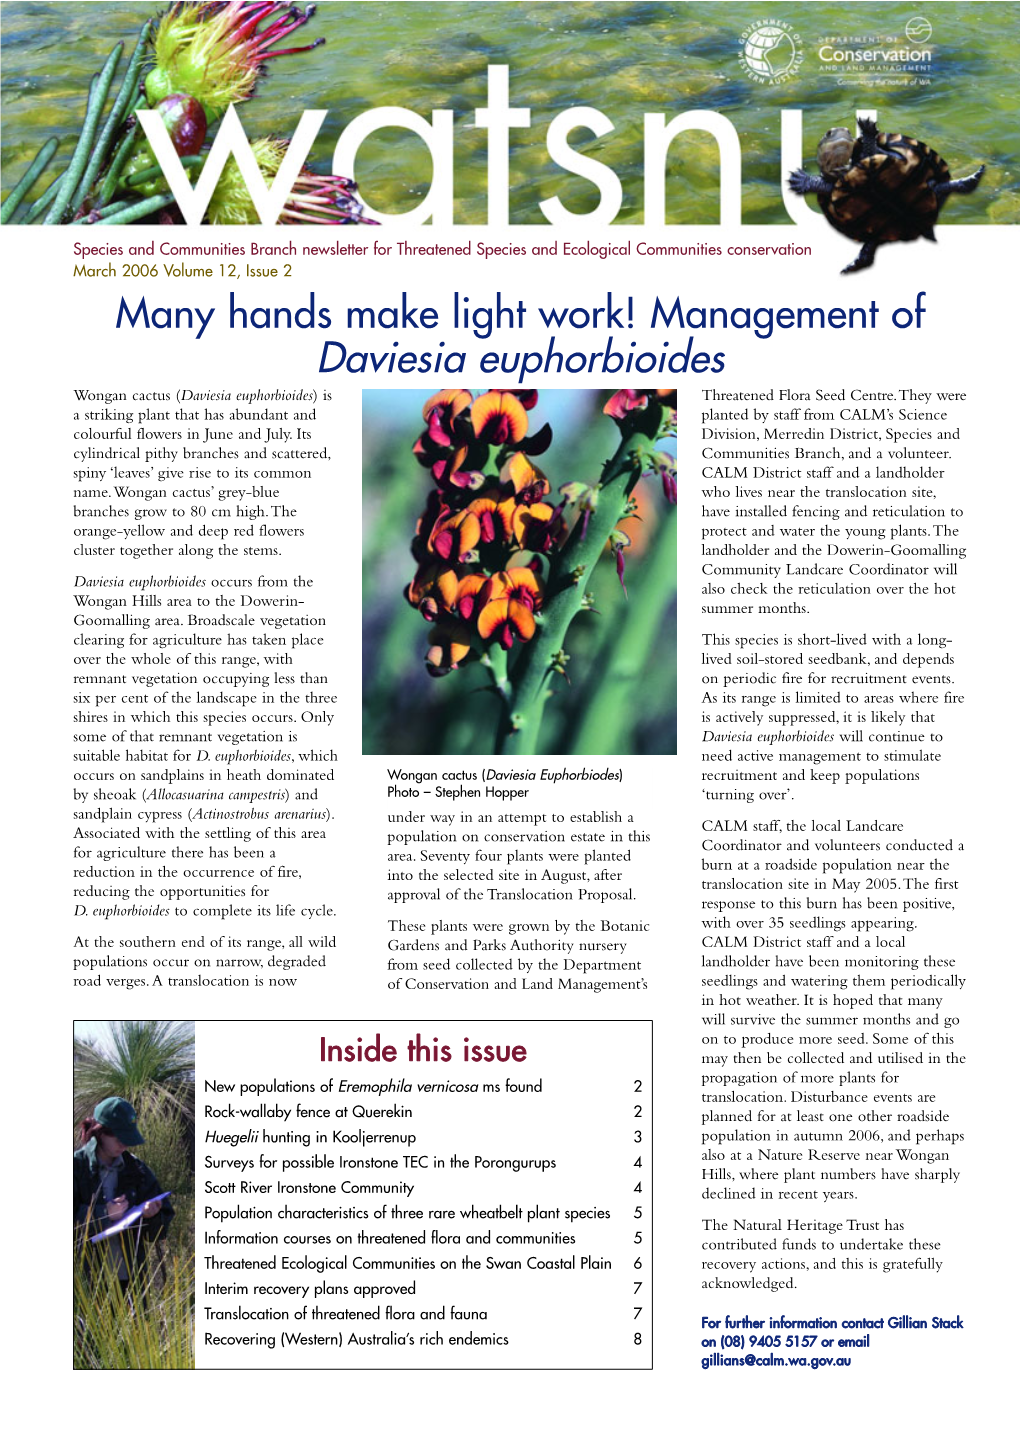 Many Hands Make Light Work! Management of Daviesia